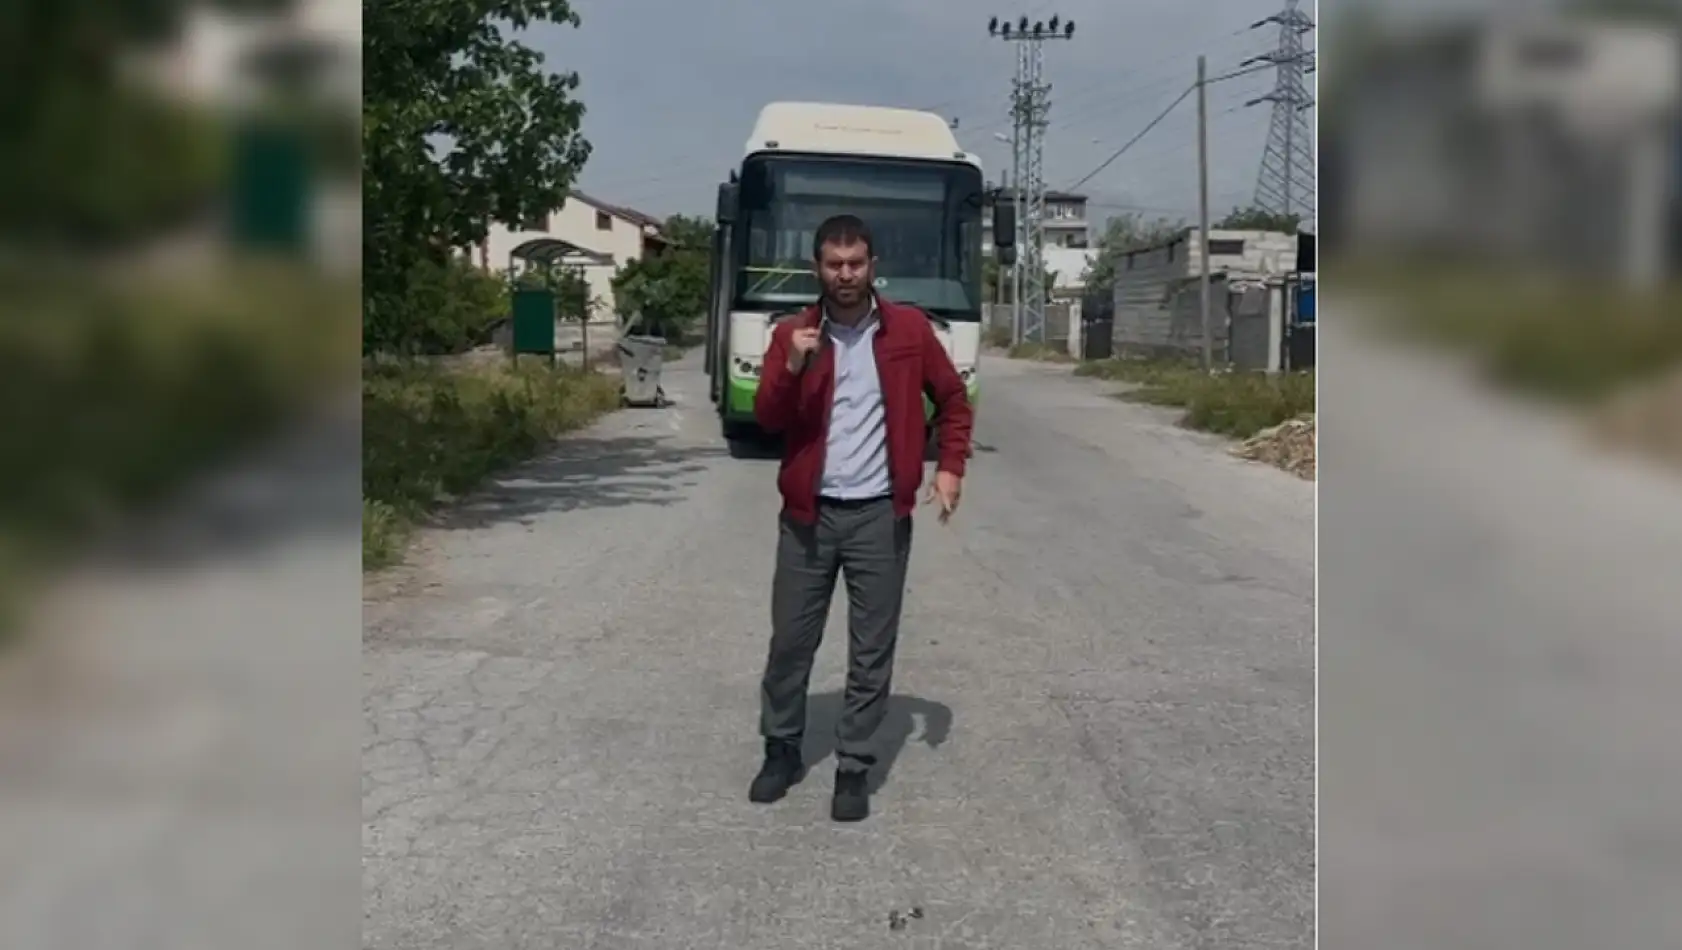 Kayseri'de Özel Halk Otobüsü Şoföründen Basın Mensubuna Küfürlü Saldırı